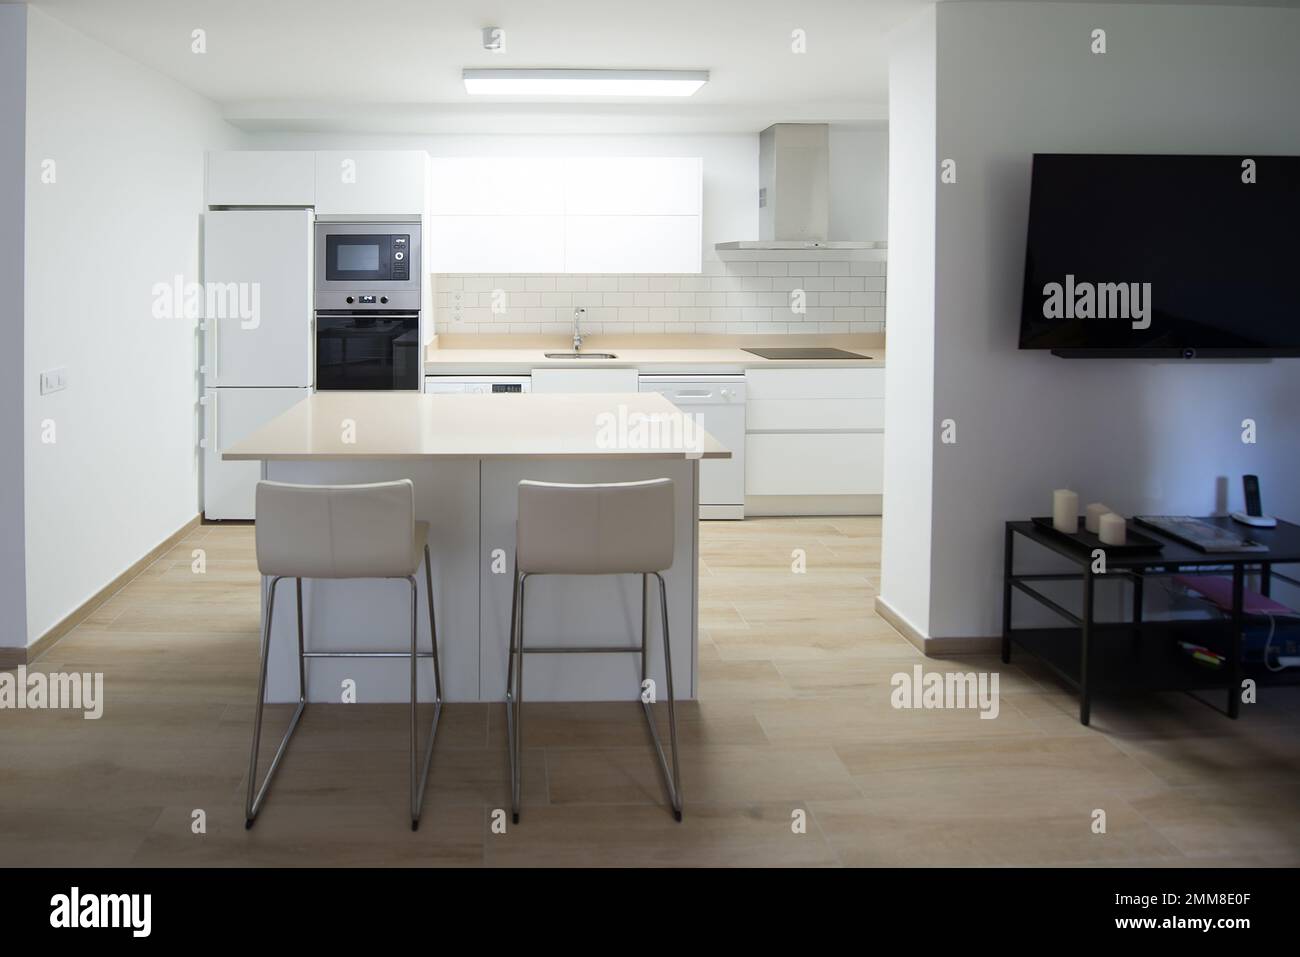 Cucina moderna di una casa perfettamente attrezzata con tutti i suoi elettrodomestici Foto Stock